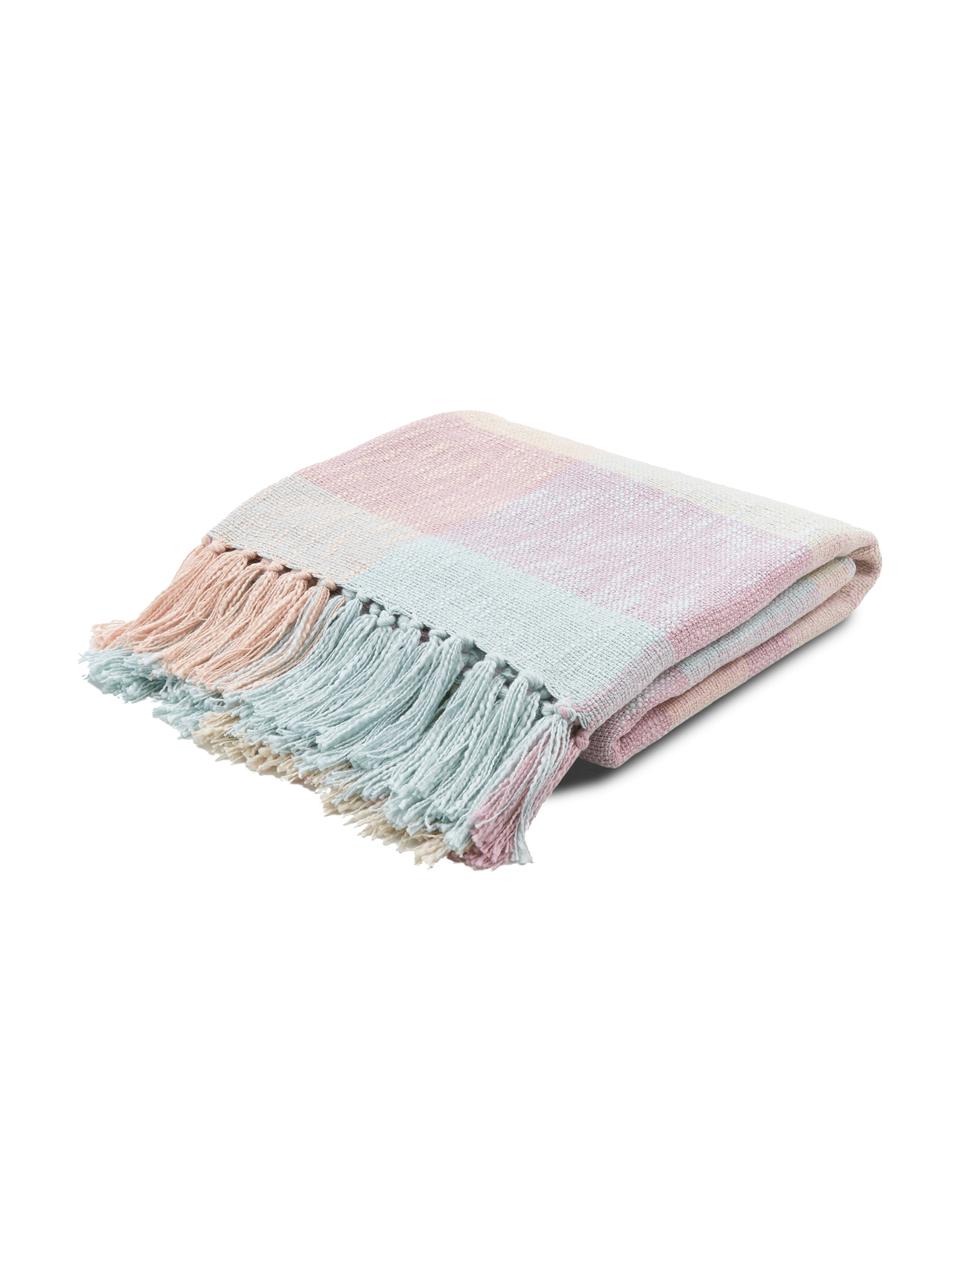 Károvaná bavlněná deka s třásněmi Karen, 100 % bavlna, Růžová, jantarová, světle modrá, Š 130 cm, D 170 cm